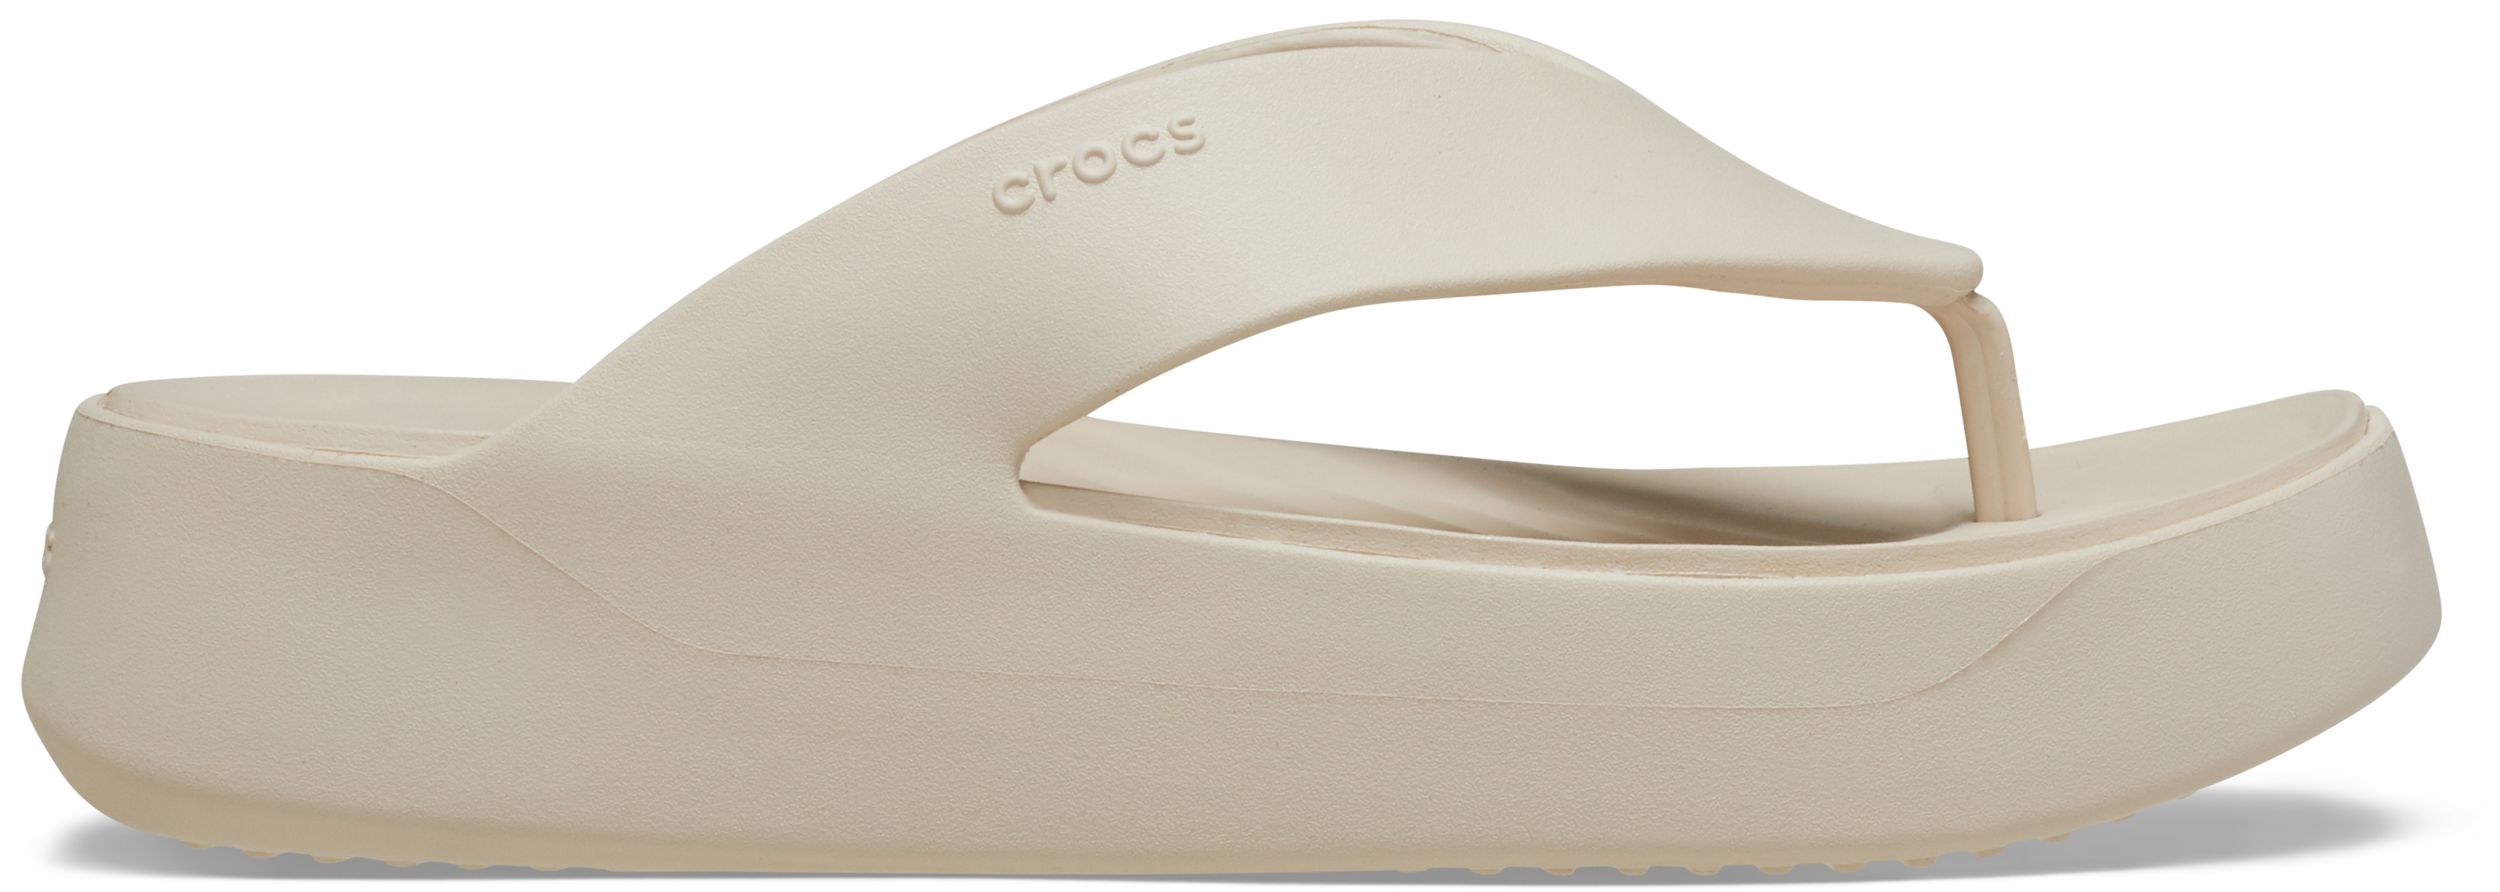 Image of Crocs Women's Getaway Platform Flip Flop Sandals